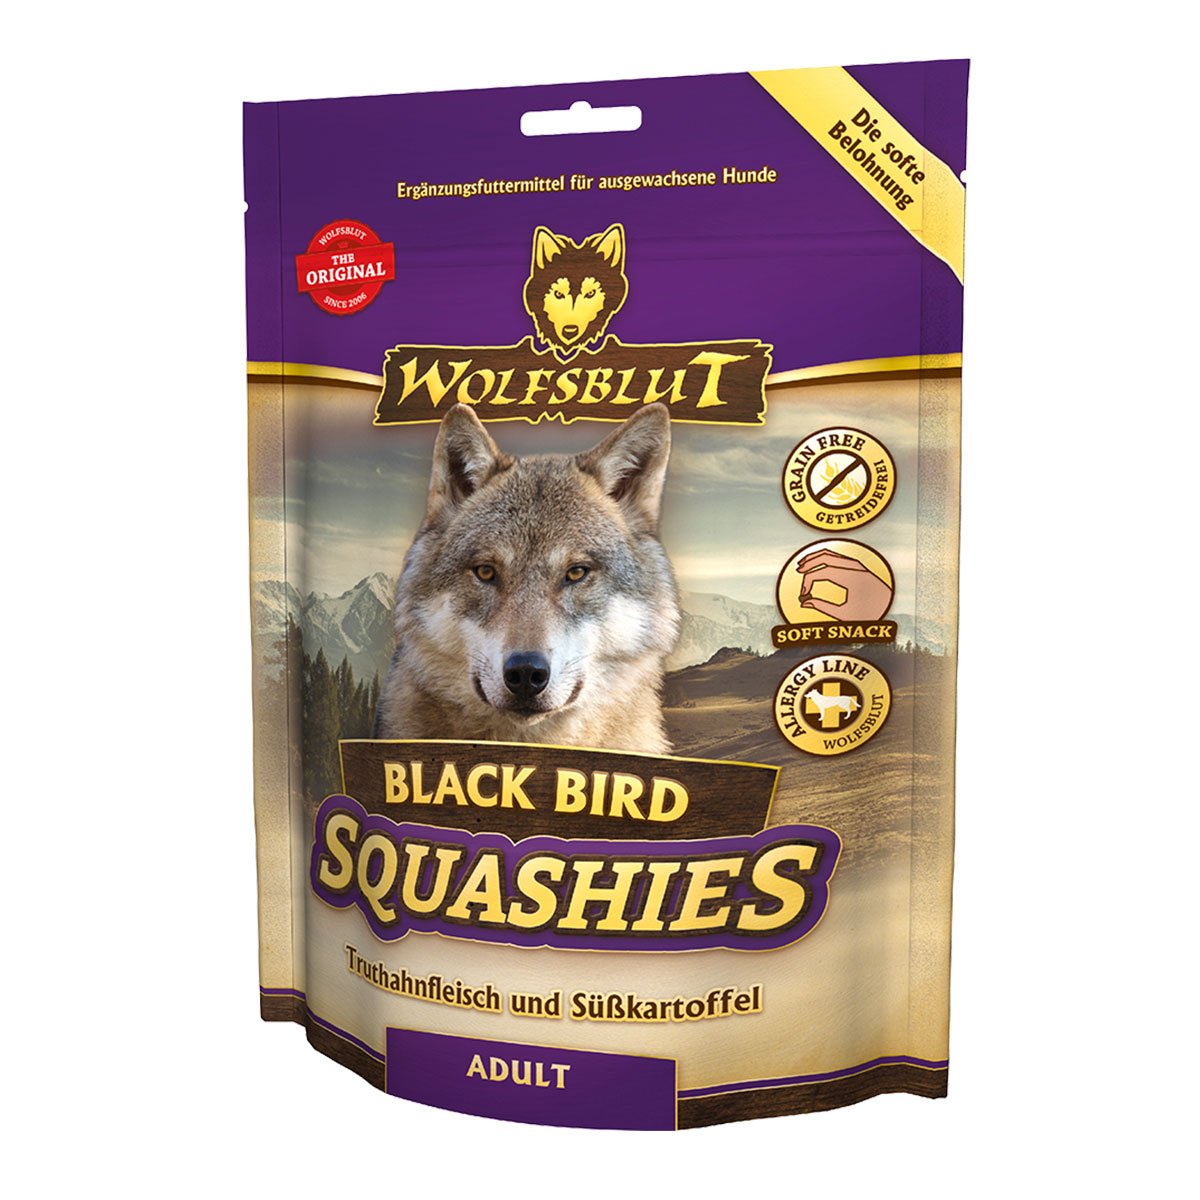 Wolfsblut Squashies Black Bird 300g von Wolfsblut